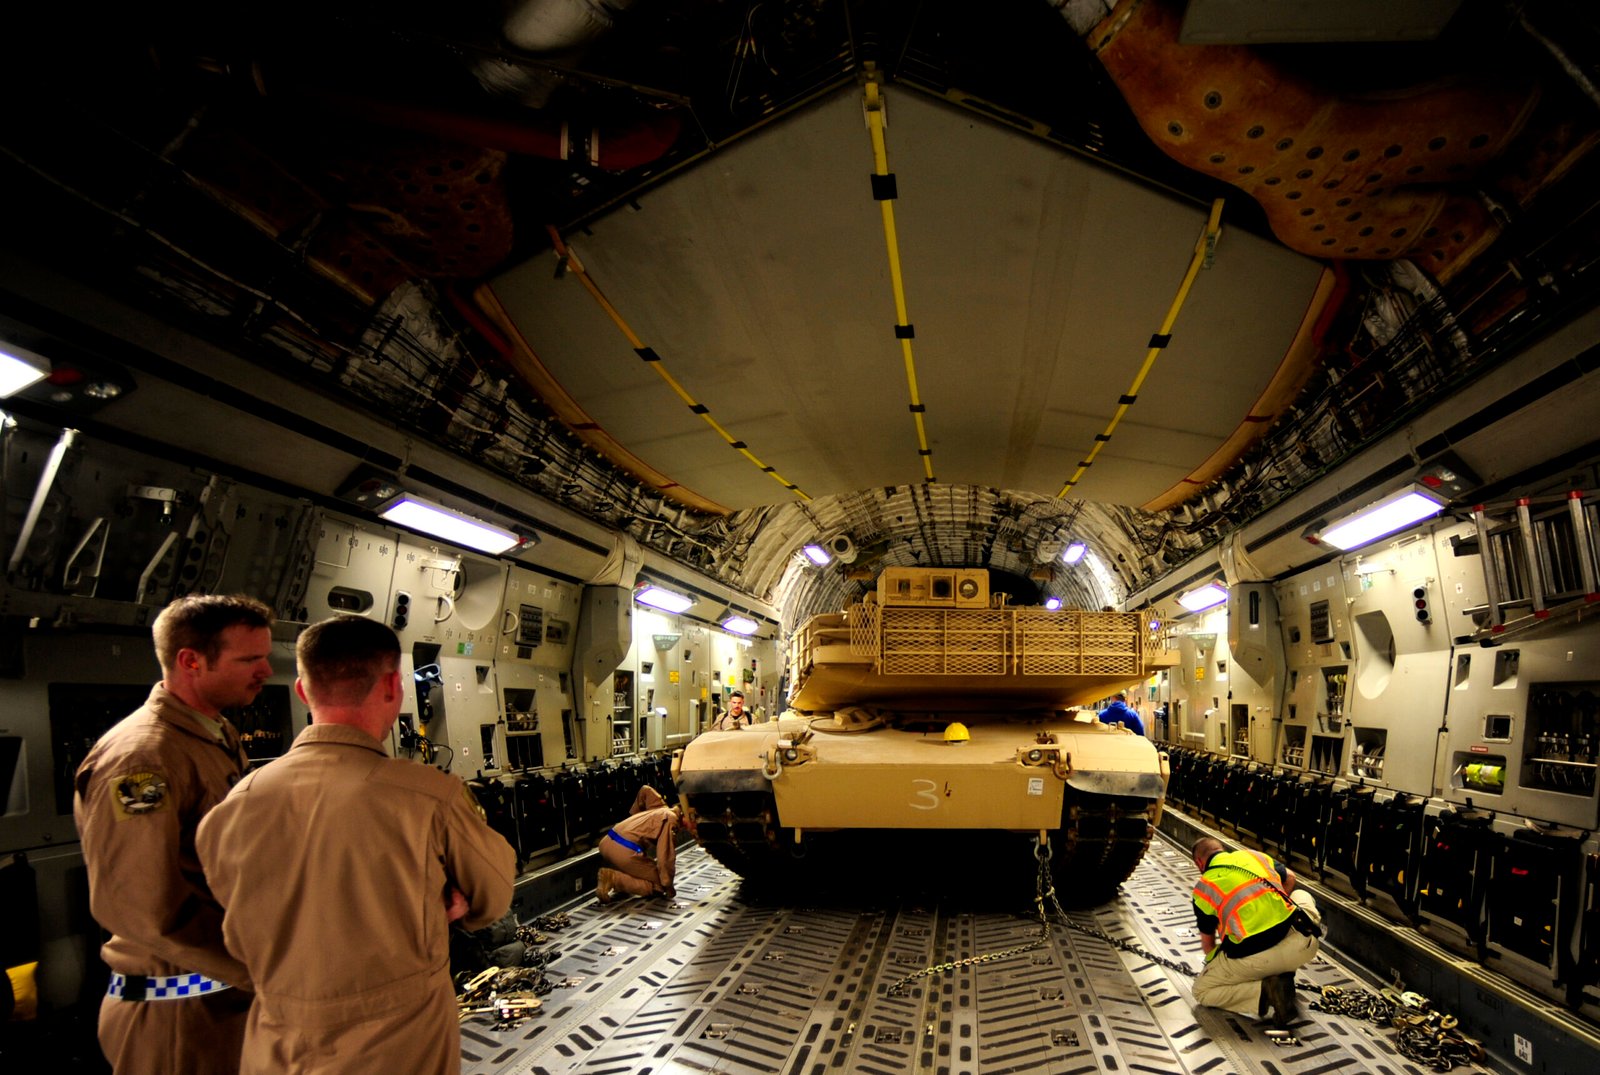 Debido a su peso, el M1A1 Abrams es colocado siempre en el centro del avión y las sujeciones son revisadas durante todo el vuelo. Foto: Sgt. Andy M. Kin